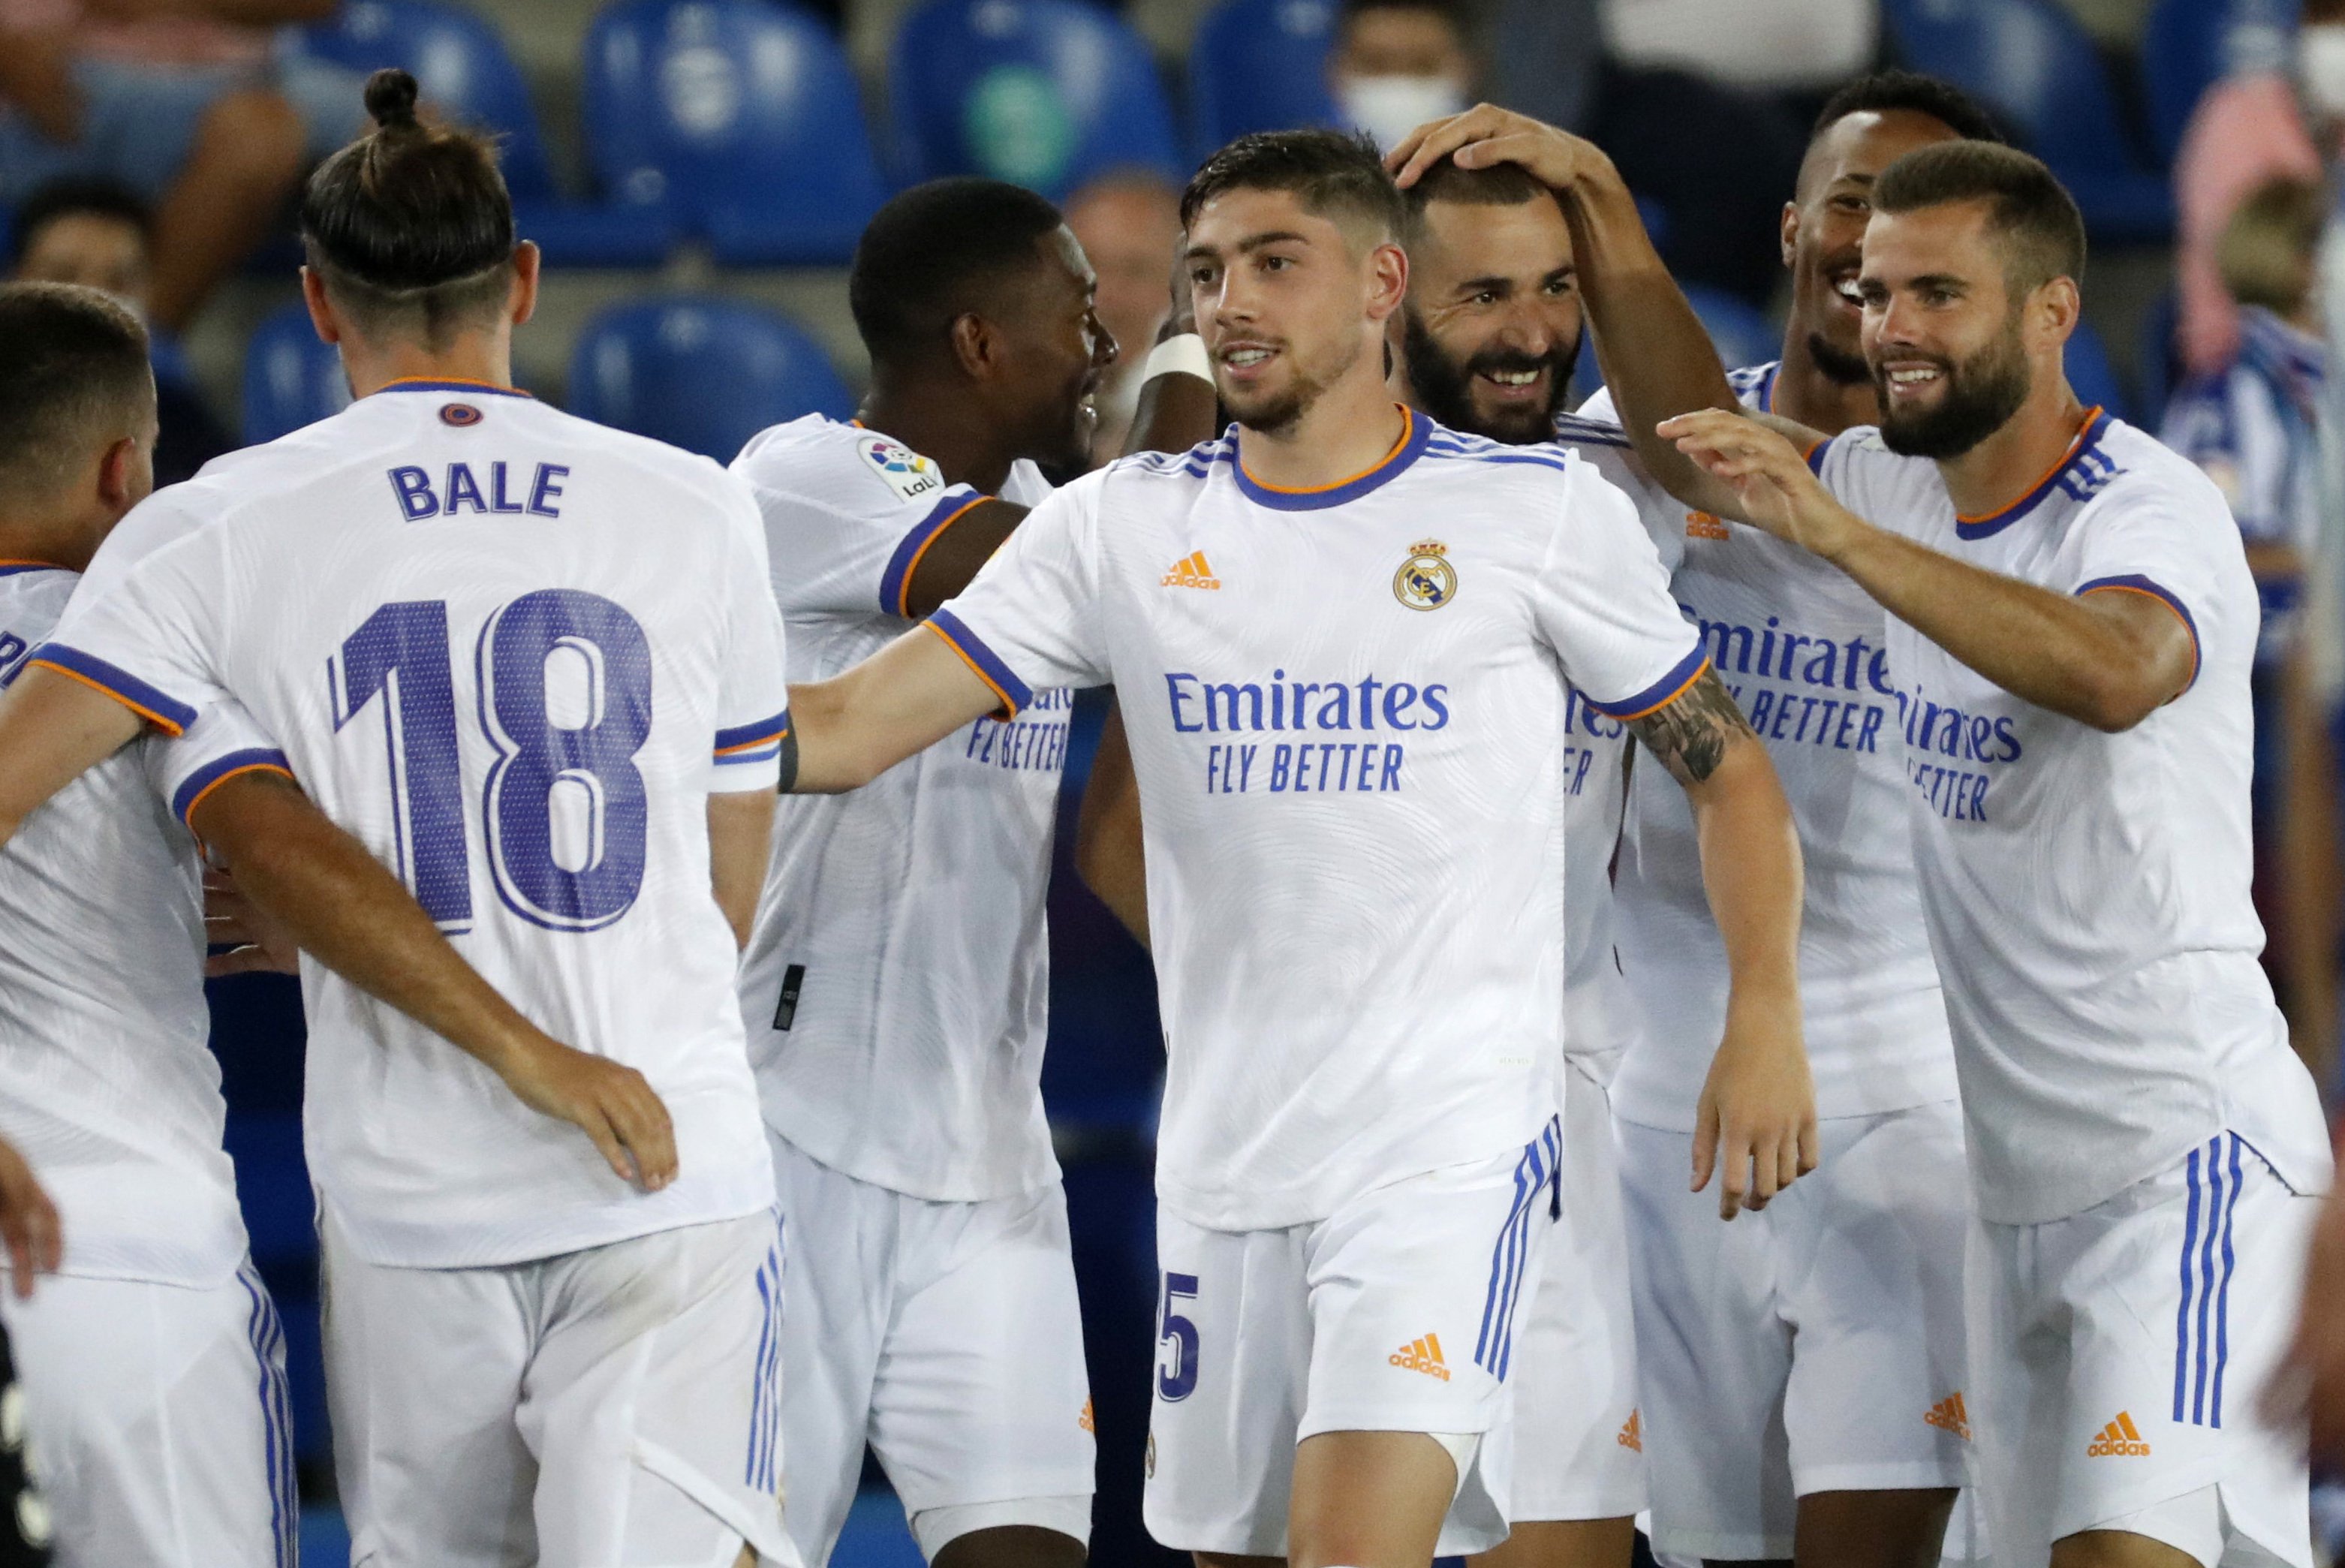 El Madrid golea al Alavés y el Espanyol empata en su vuelta a Primera